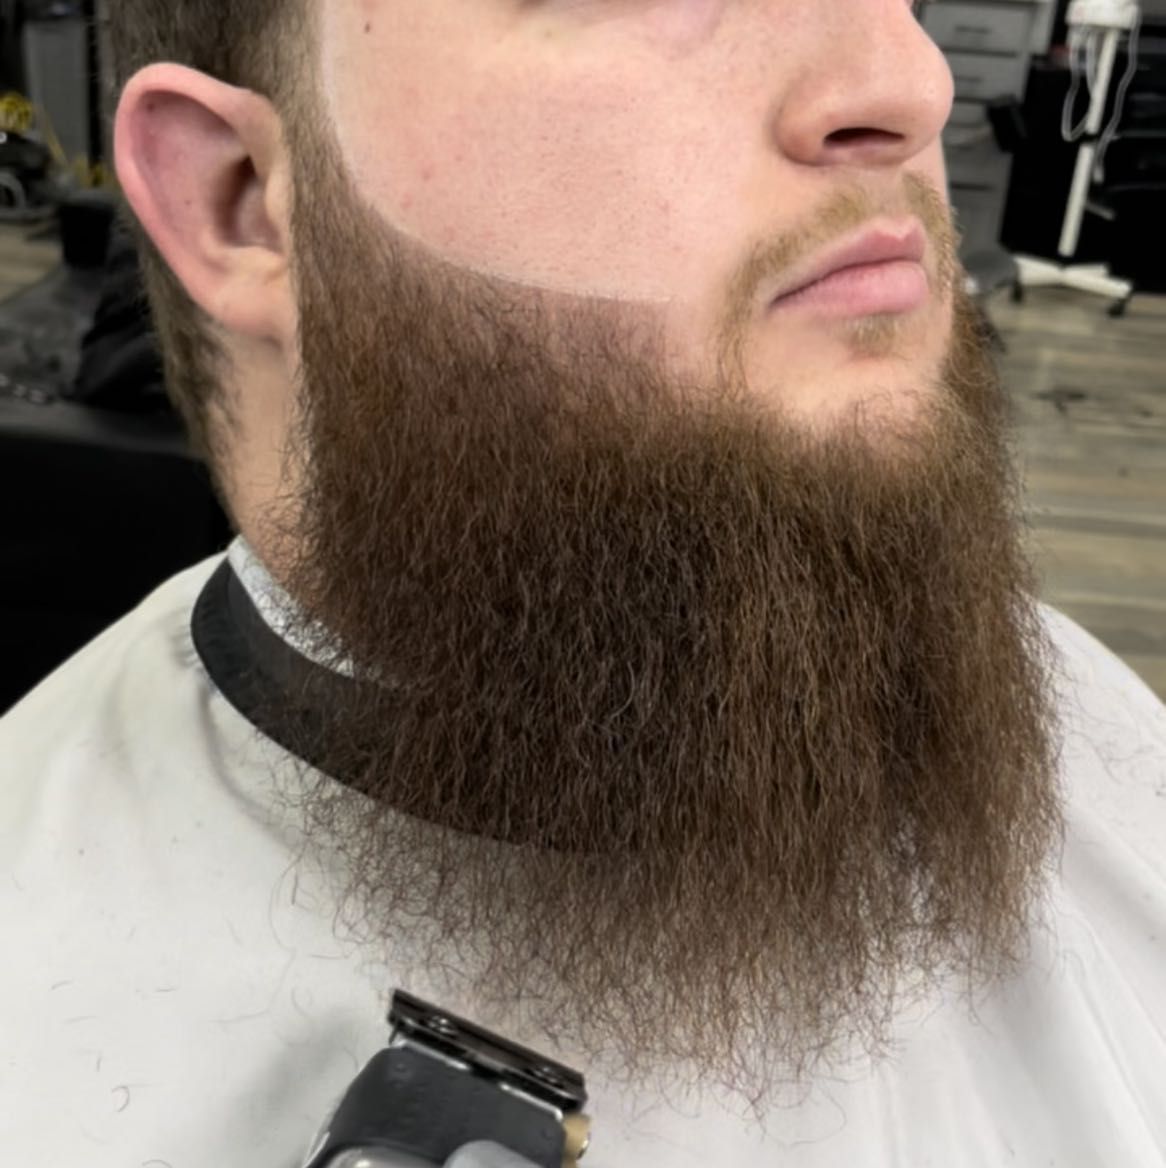 Beard trim and line up portfolio